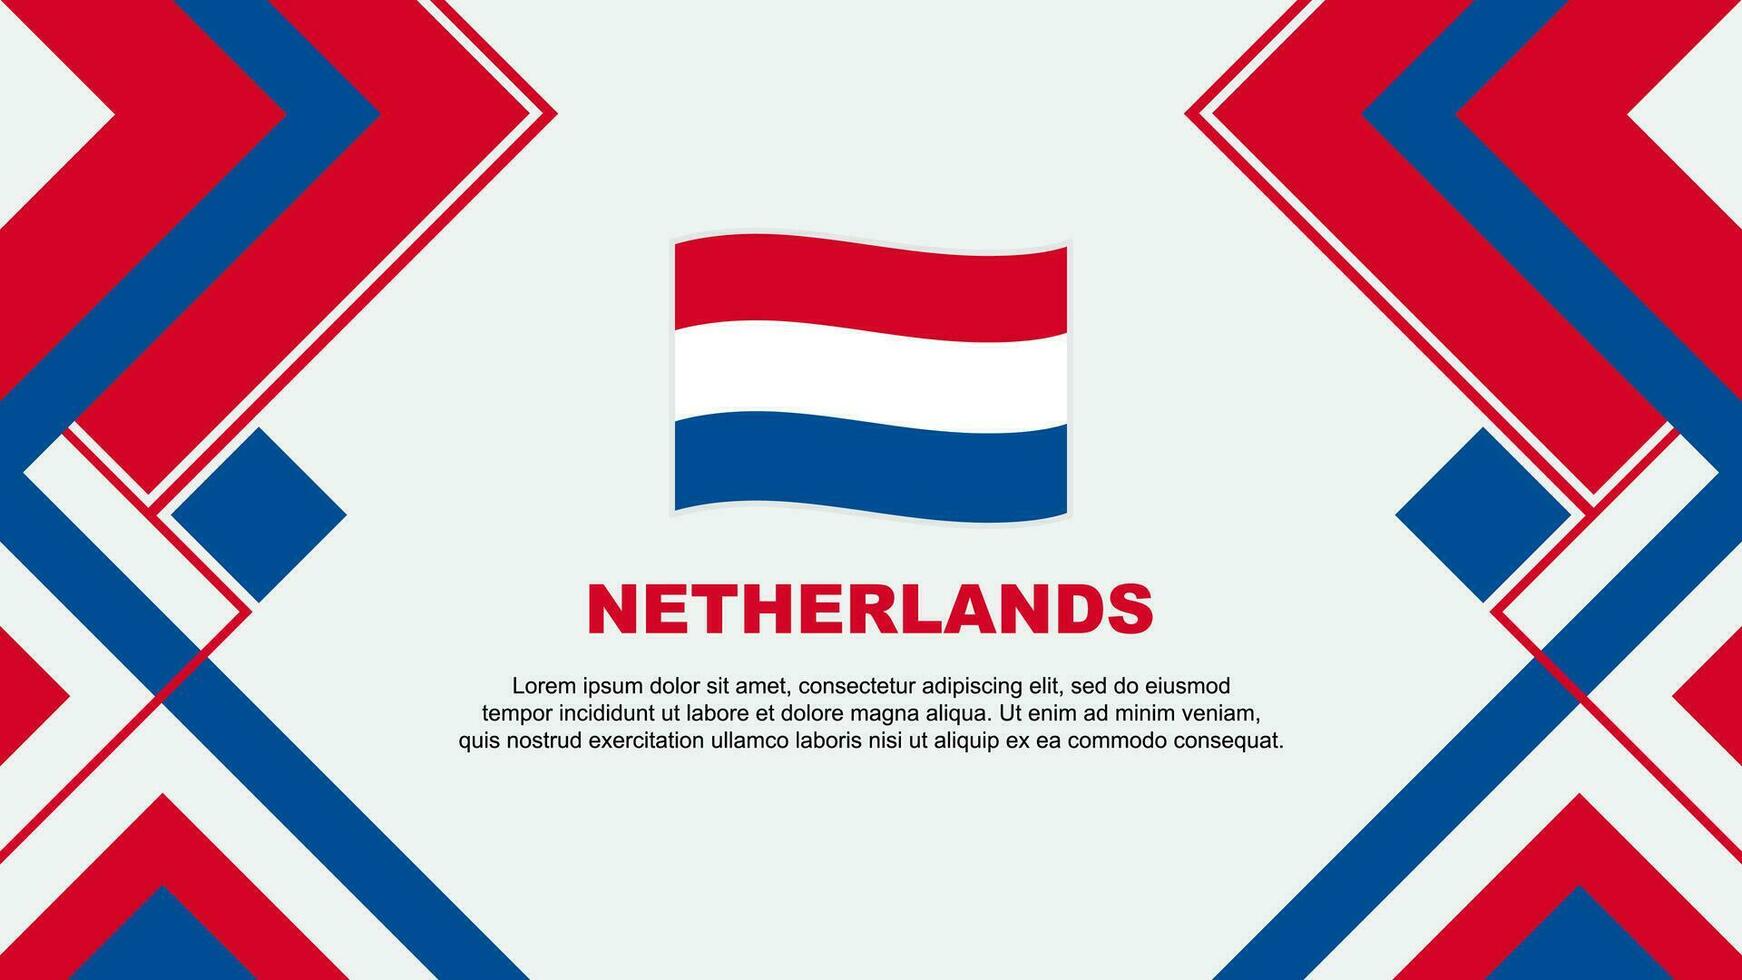 Netherlands Flag Abstract Background Design Template. Netherlands Independence Day Banner Wallpaper Vector Illustration. Netherlands Banner